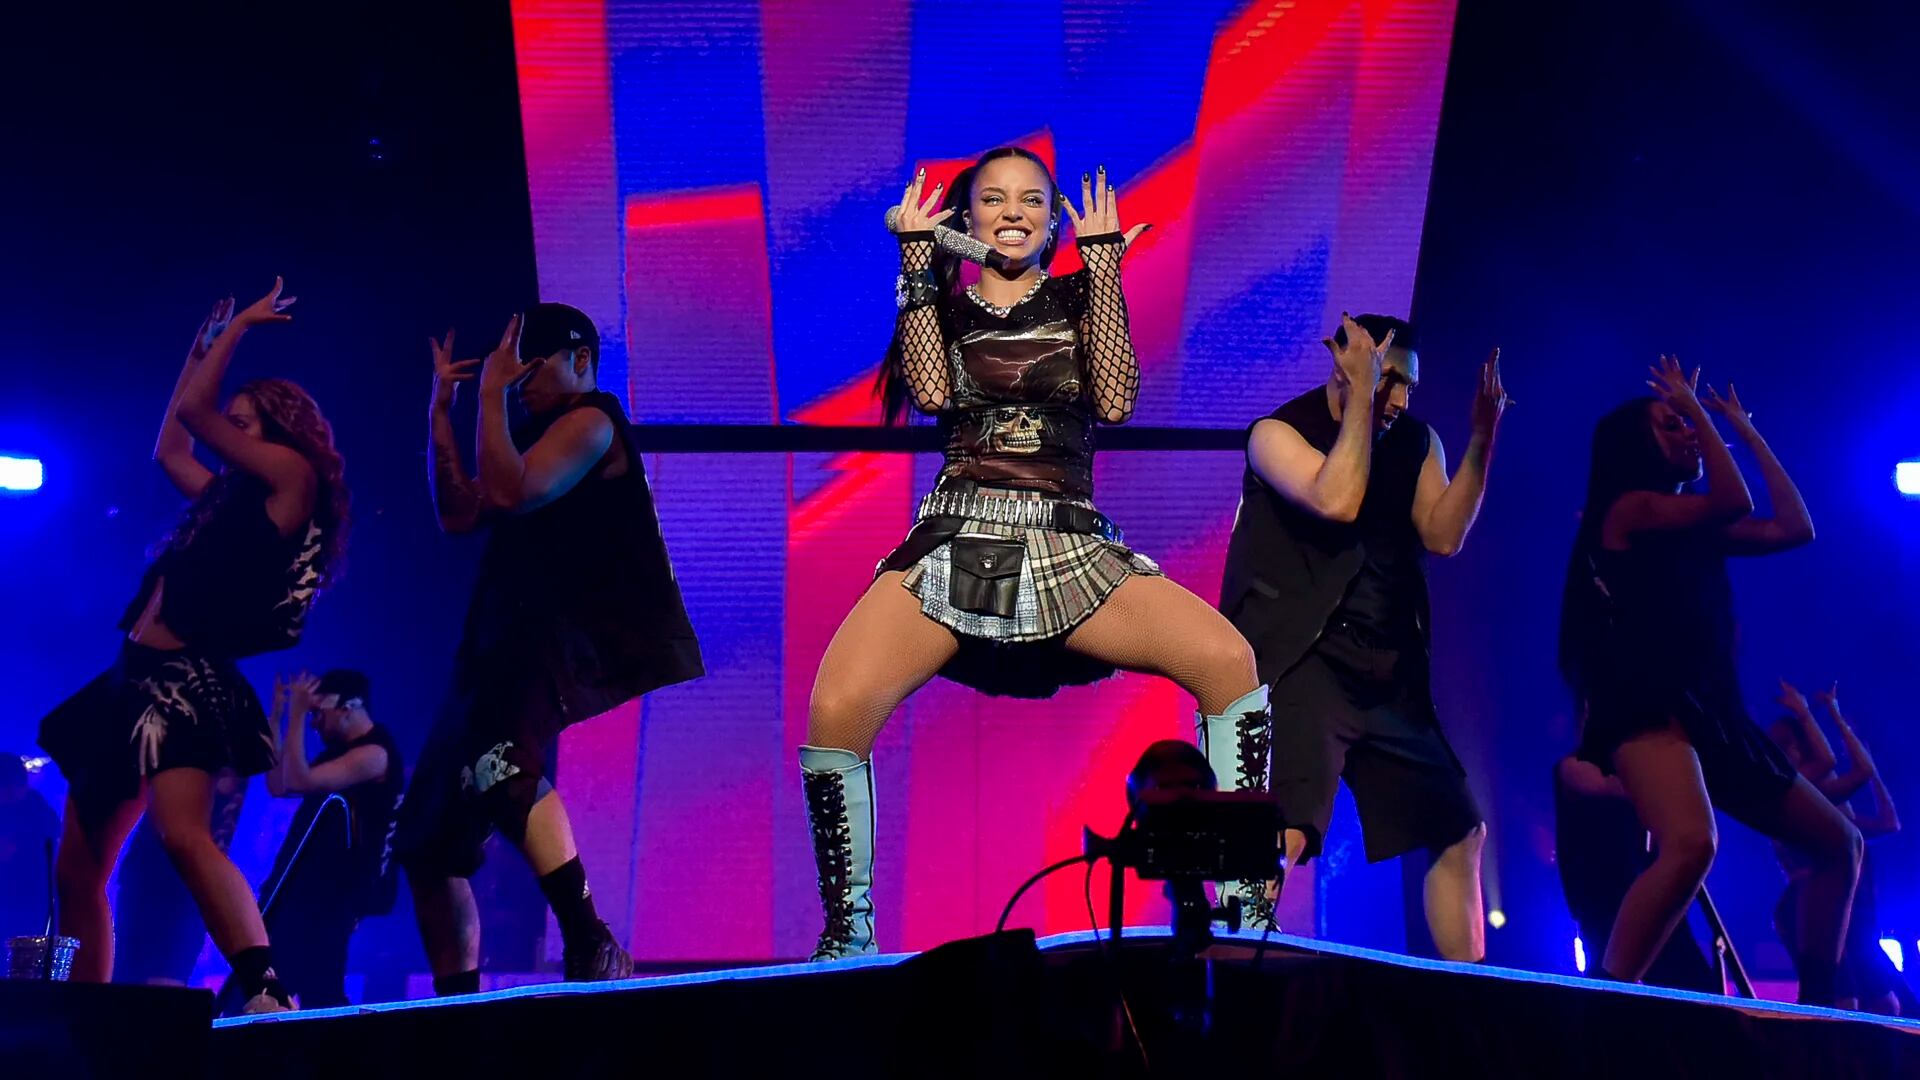 La argentina Emilia durante su show en el Movistar Arena (Gustavo Gavotti)